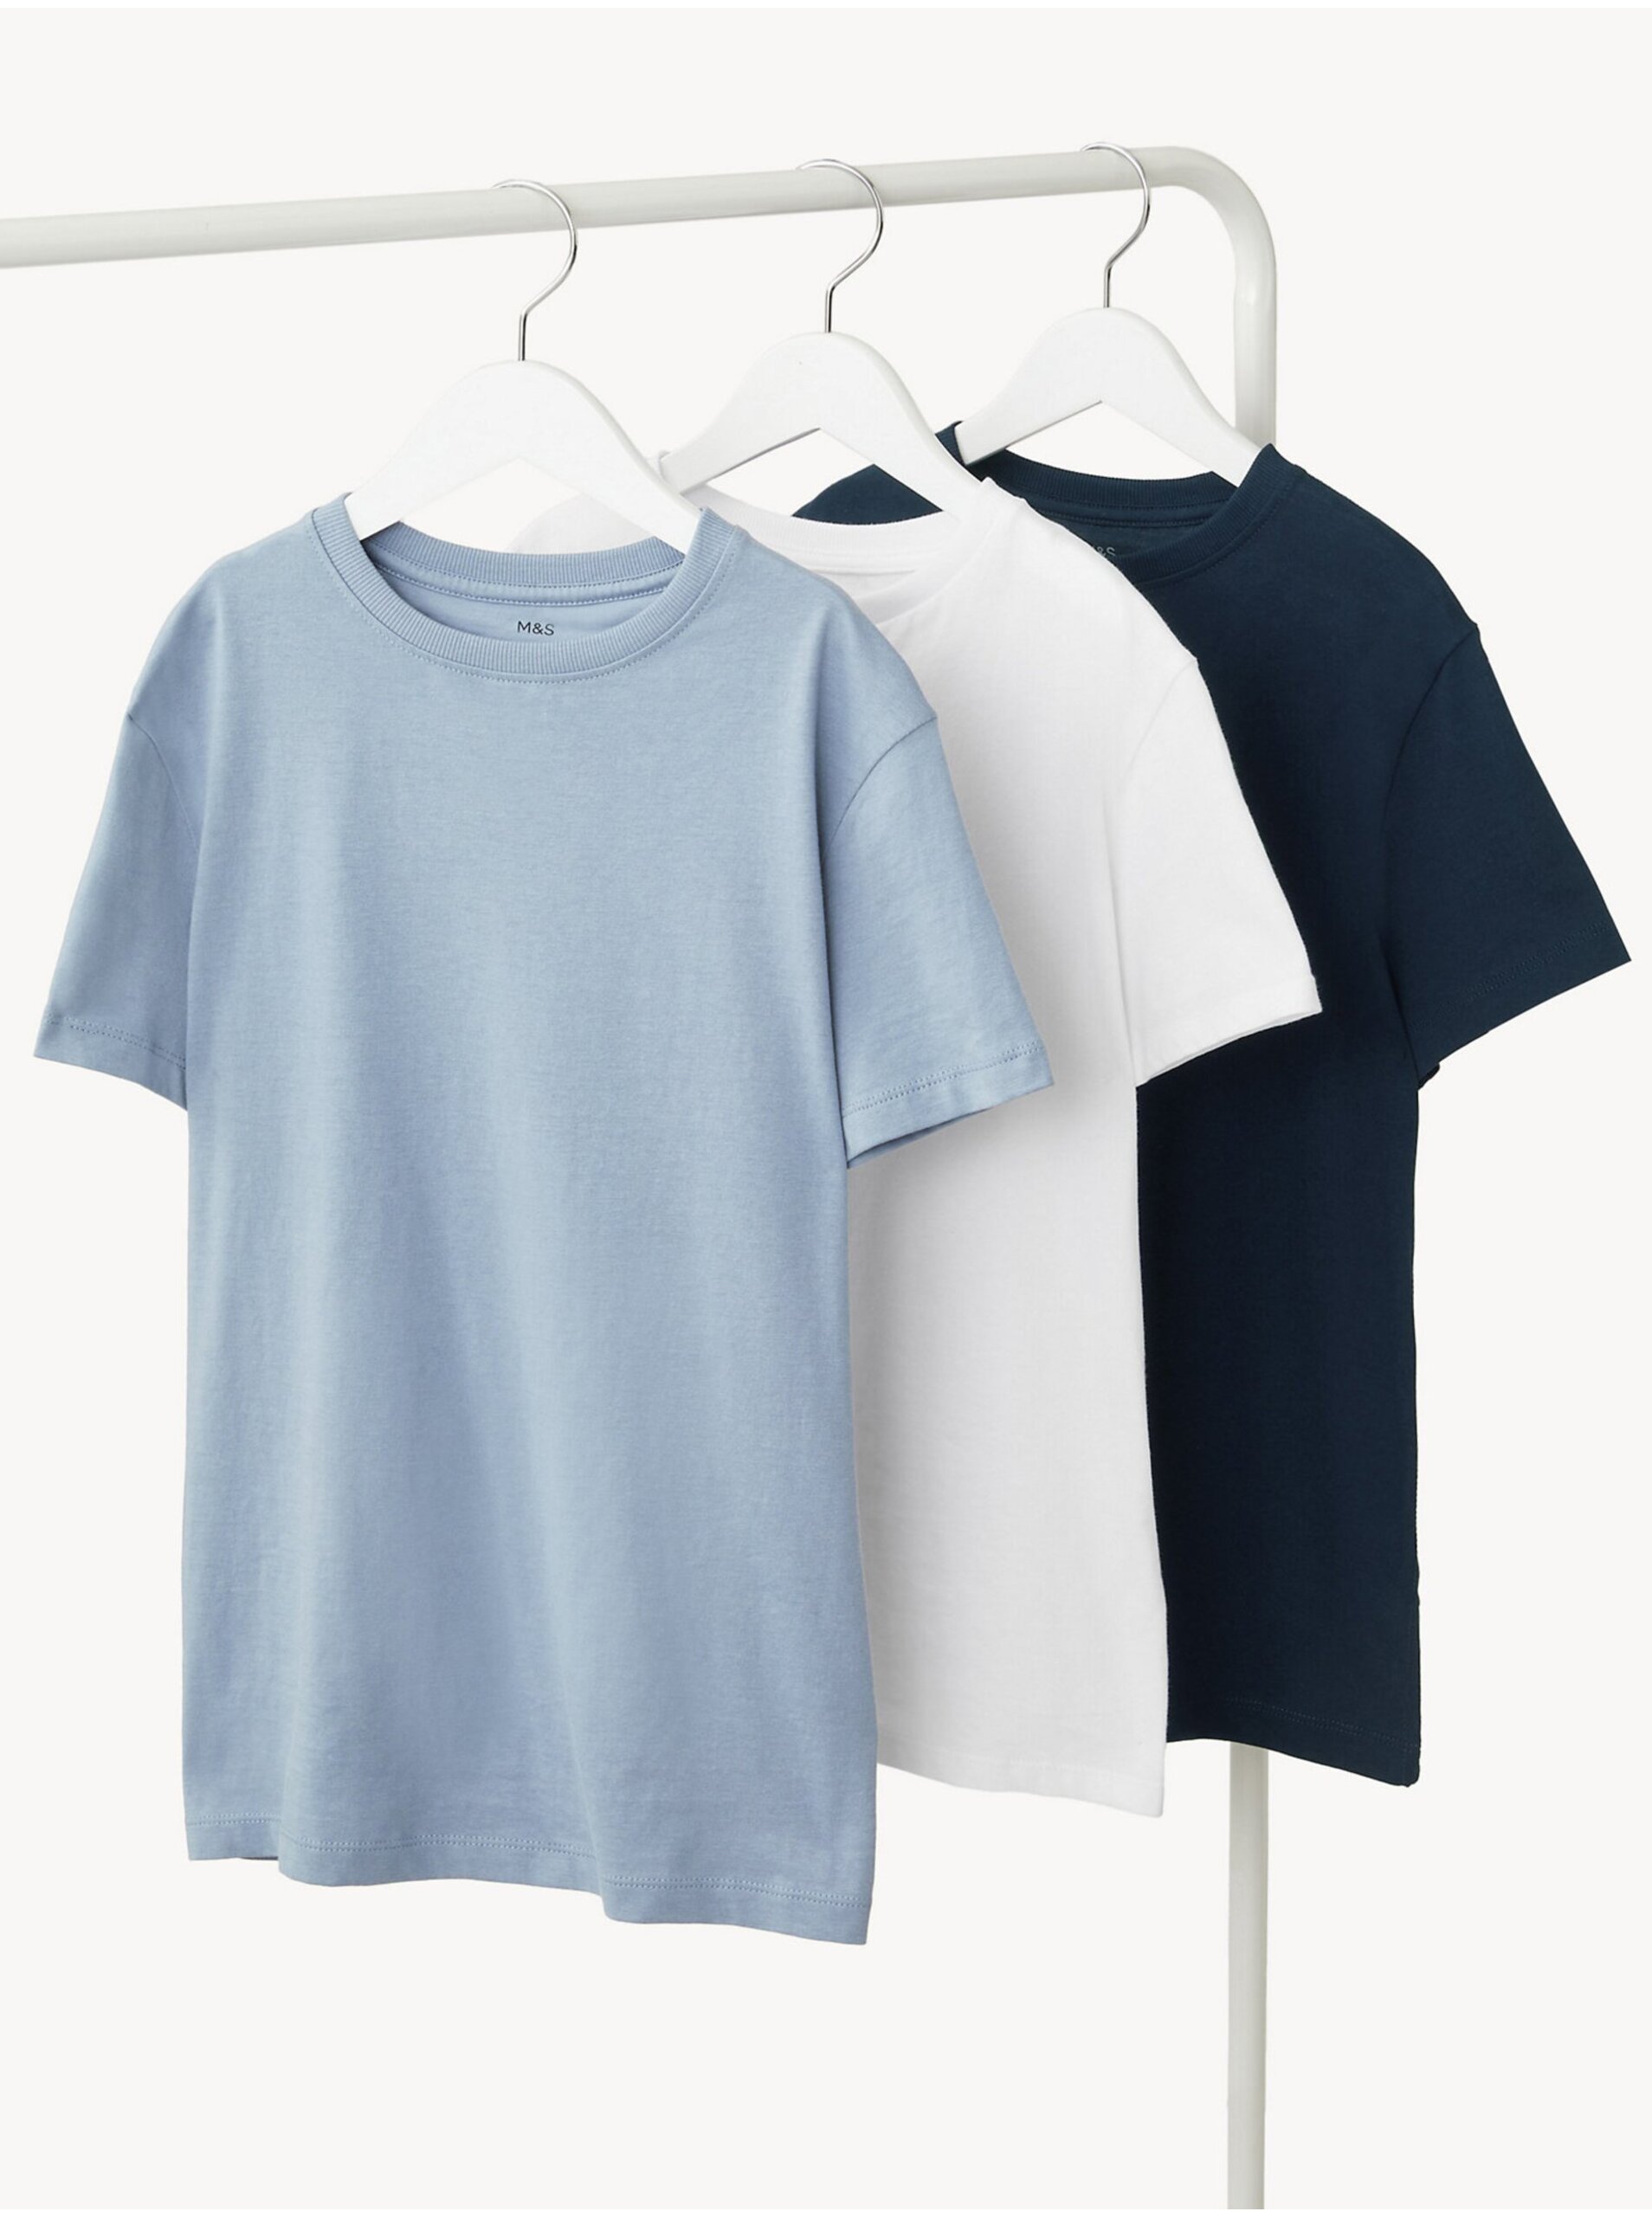 E-shop Sada tří klučičích basic triček ve světle modré, bílé a tmavě modré barvě Marks & Spencer